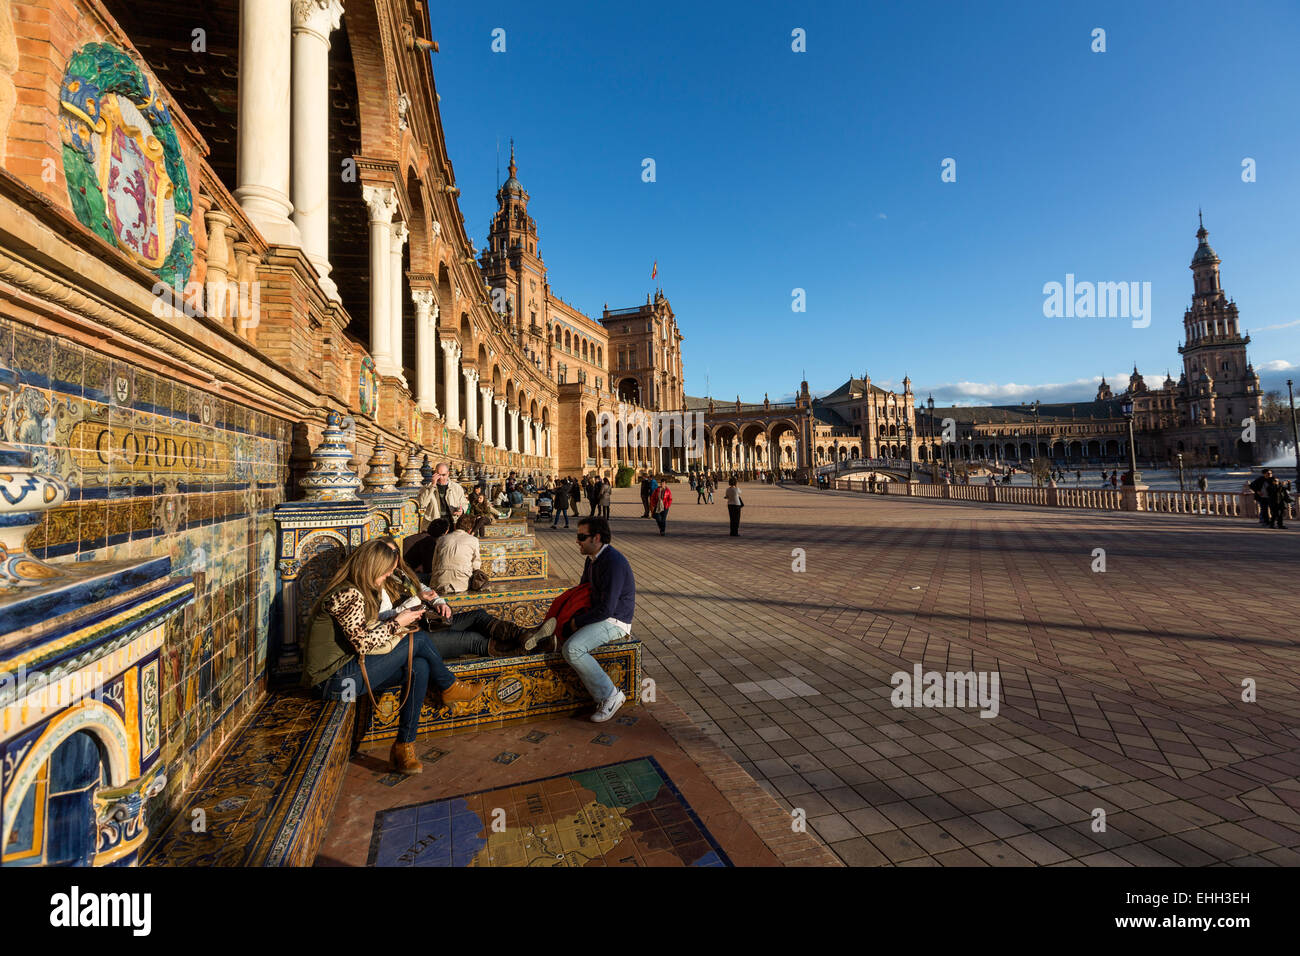 Menschen sitzen im Kachelofen Provinz Nischen an den Wänden von der Plaza de España, Spanien Platz, Luisa in Sevilla. Stockfoto